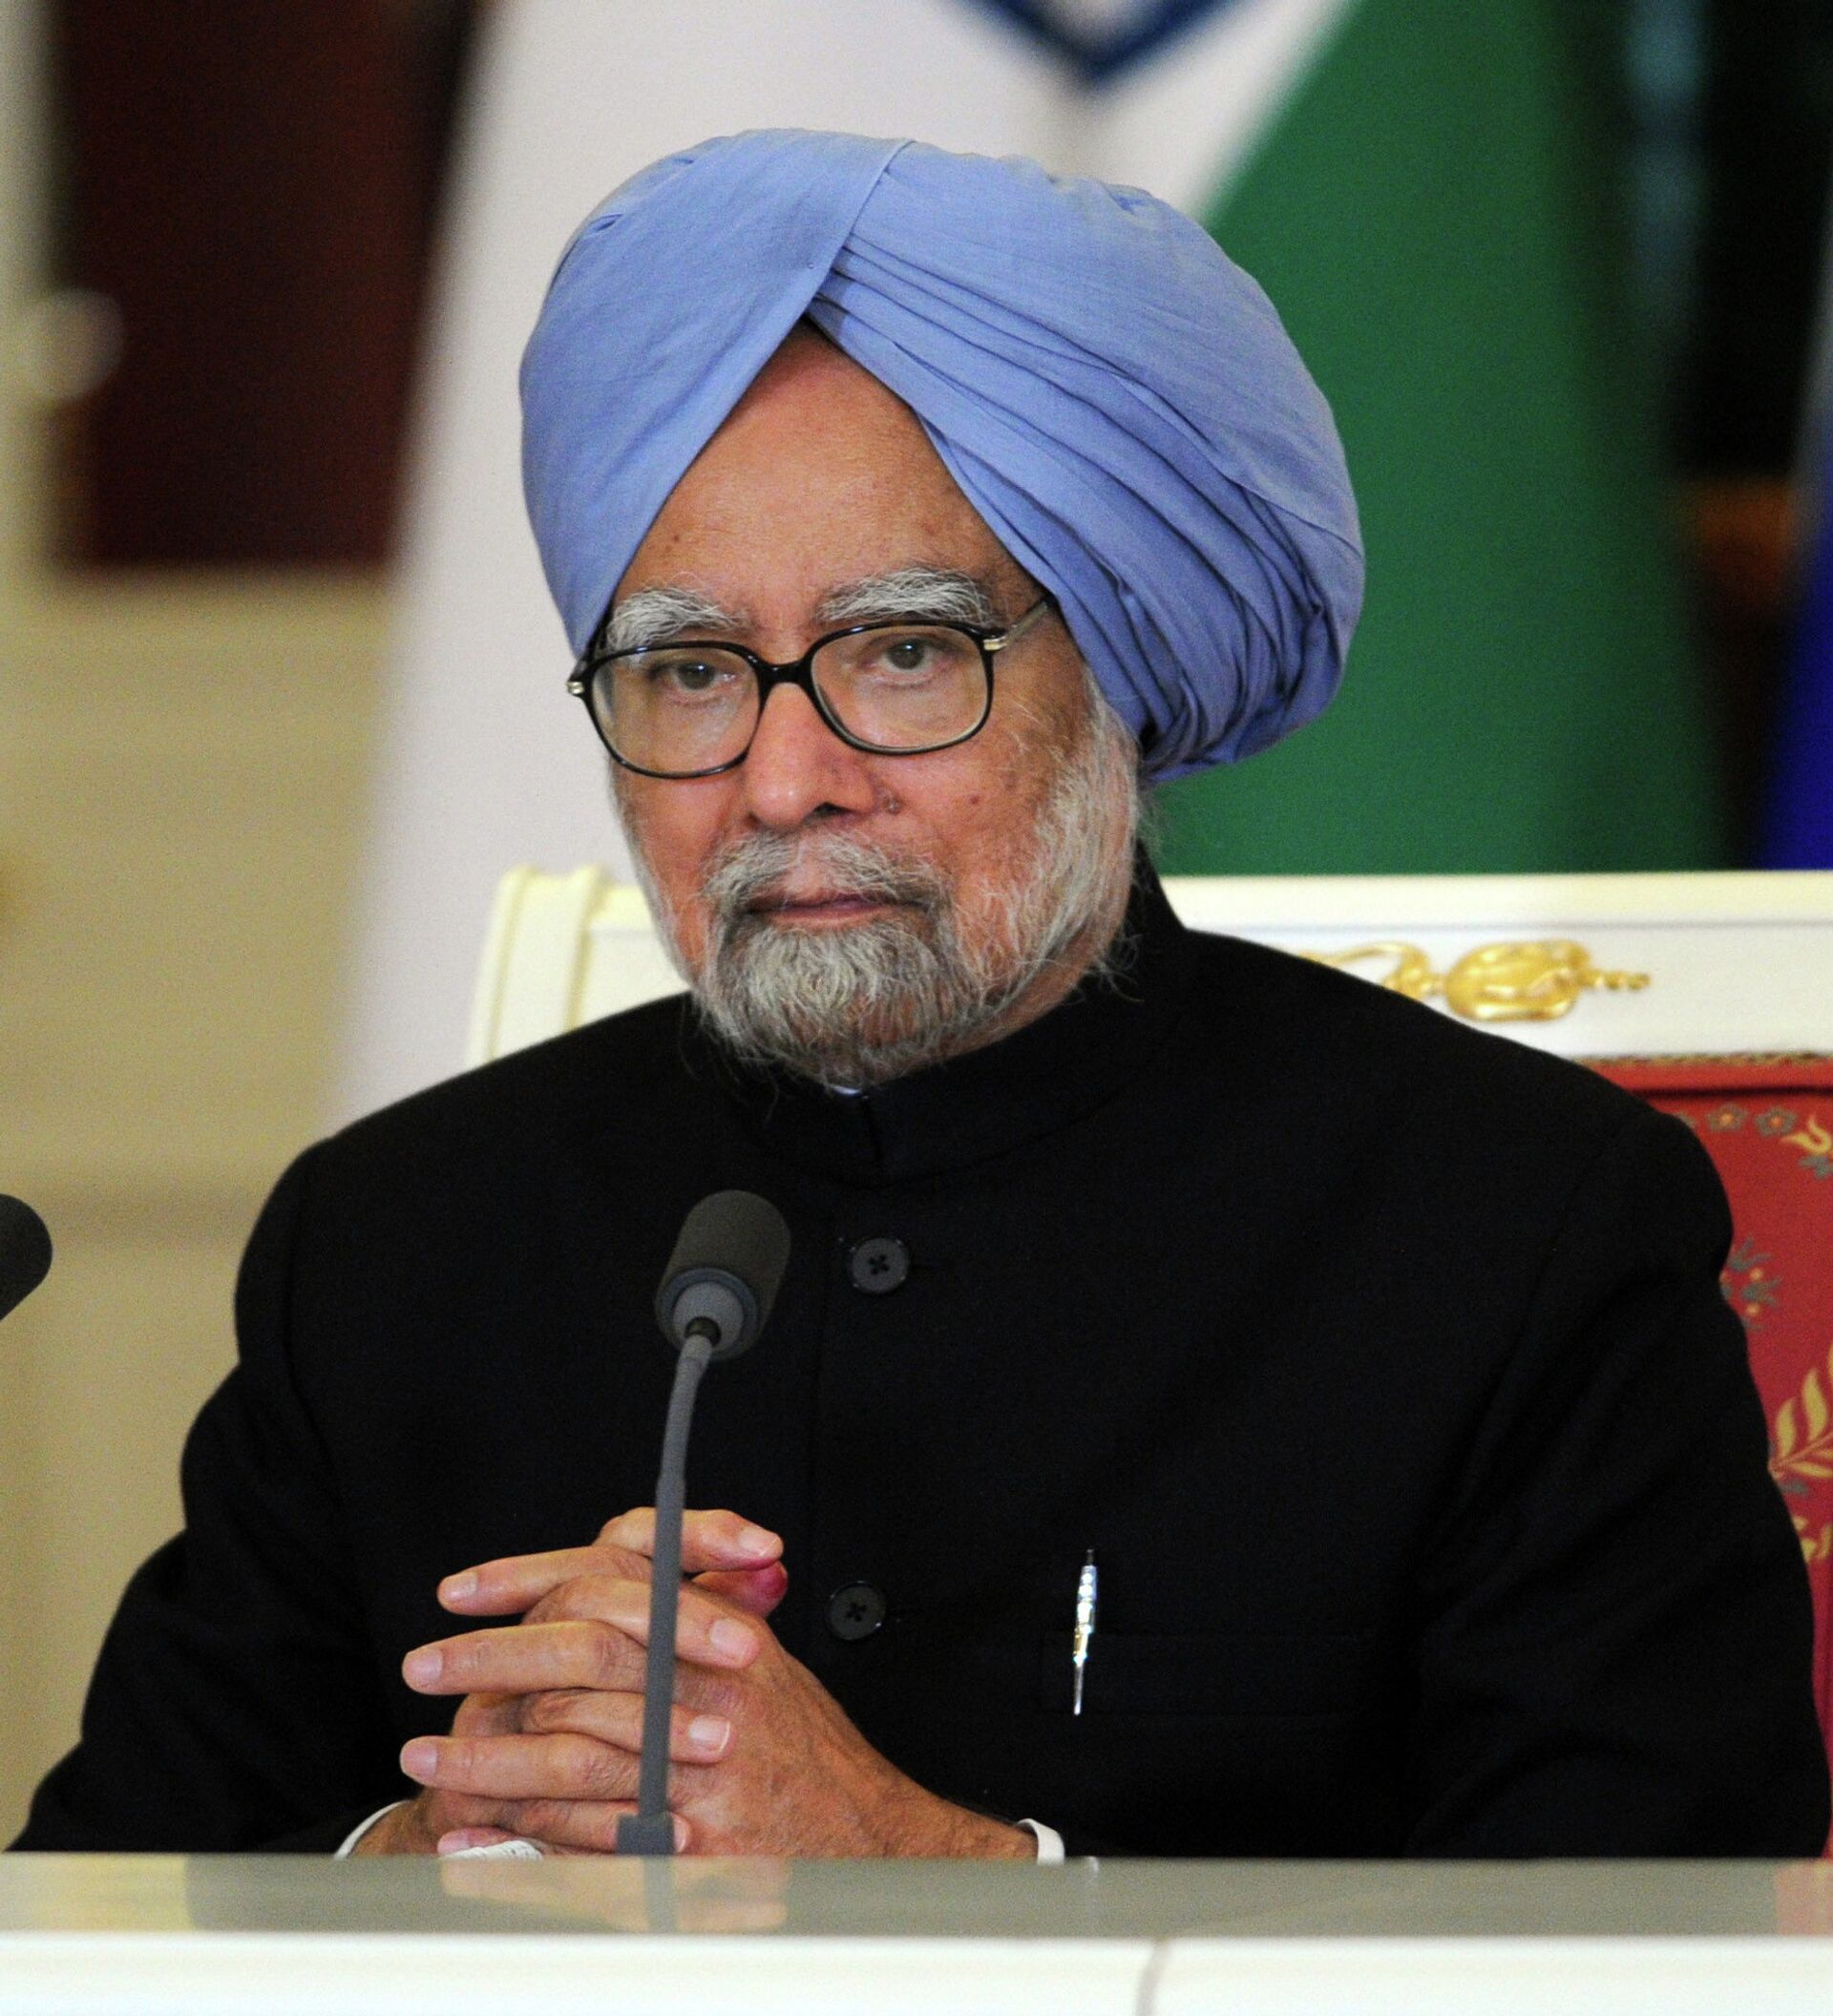 印度总理莫迪：冀印度25年内成为发达国家_凤凰网视频_凤凰网